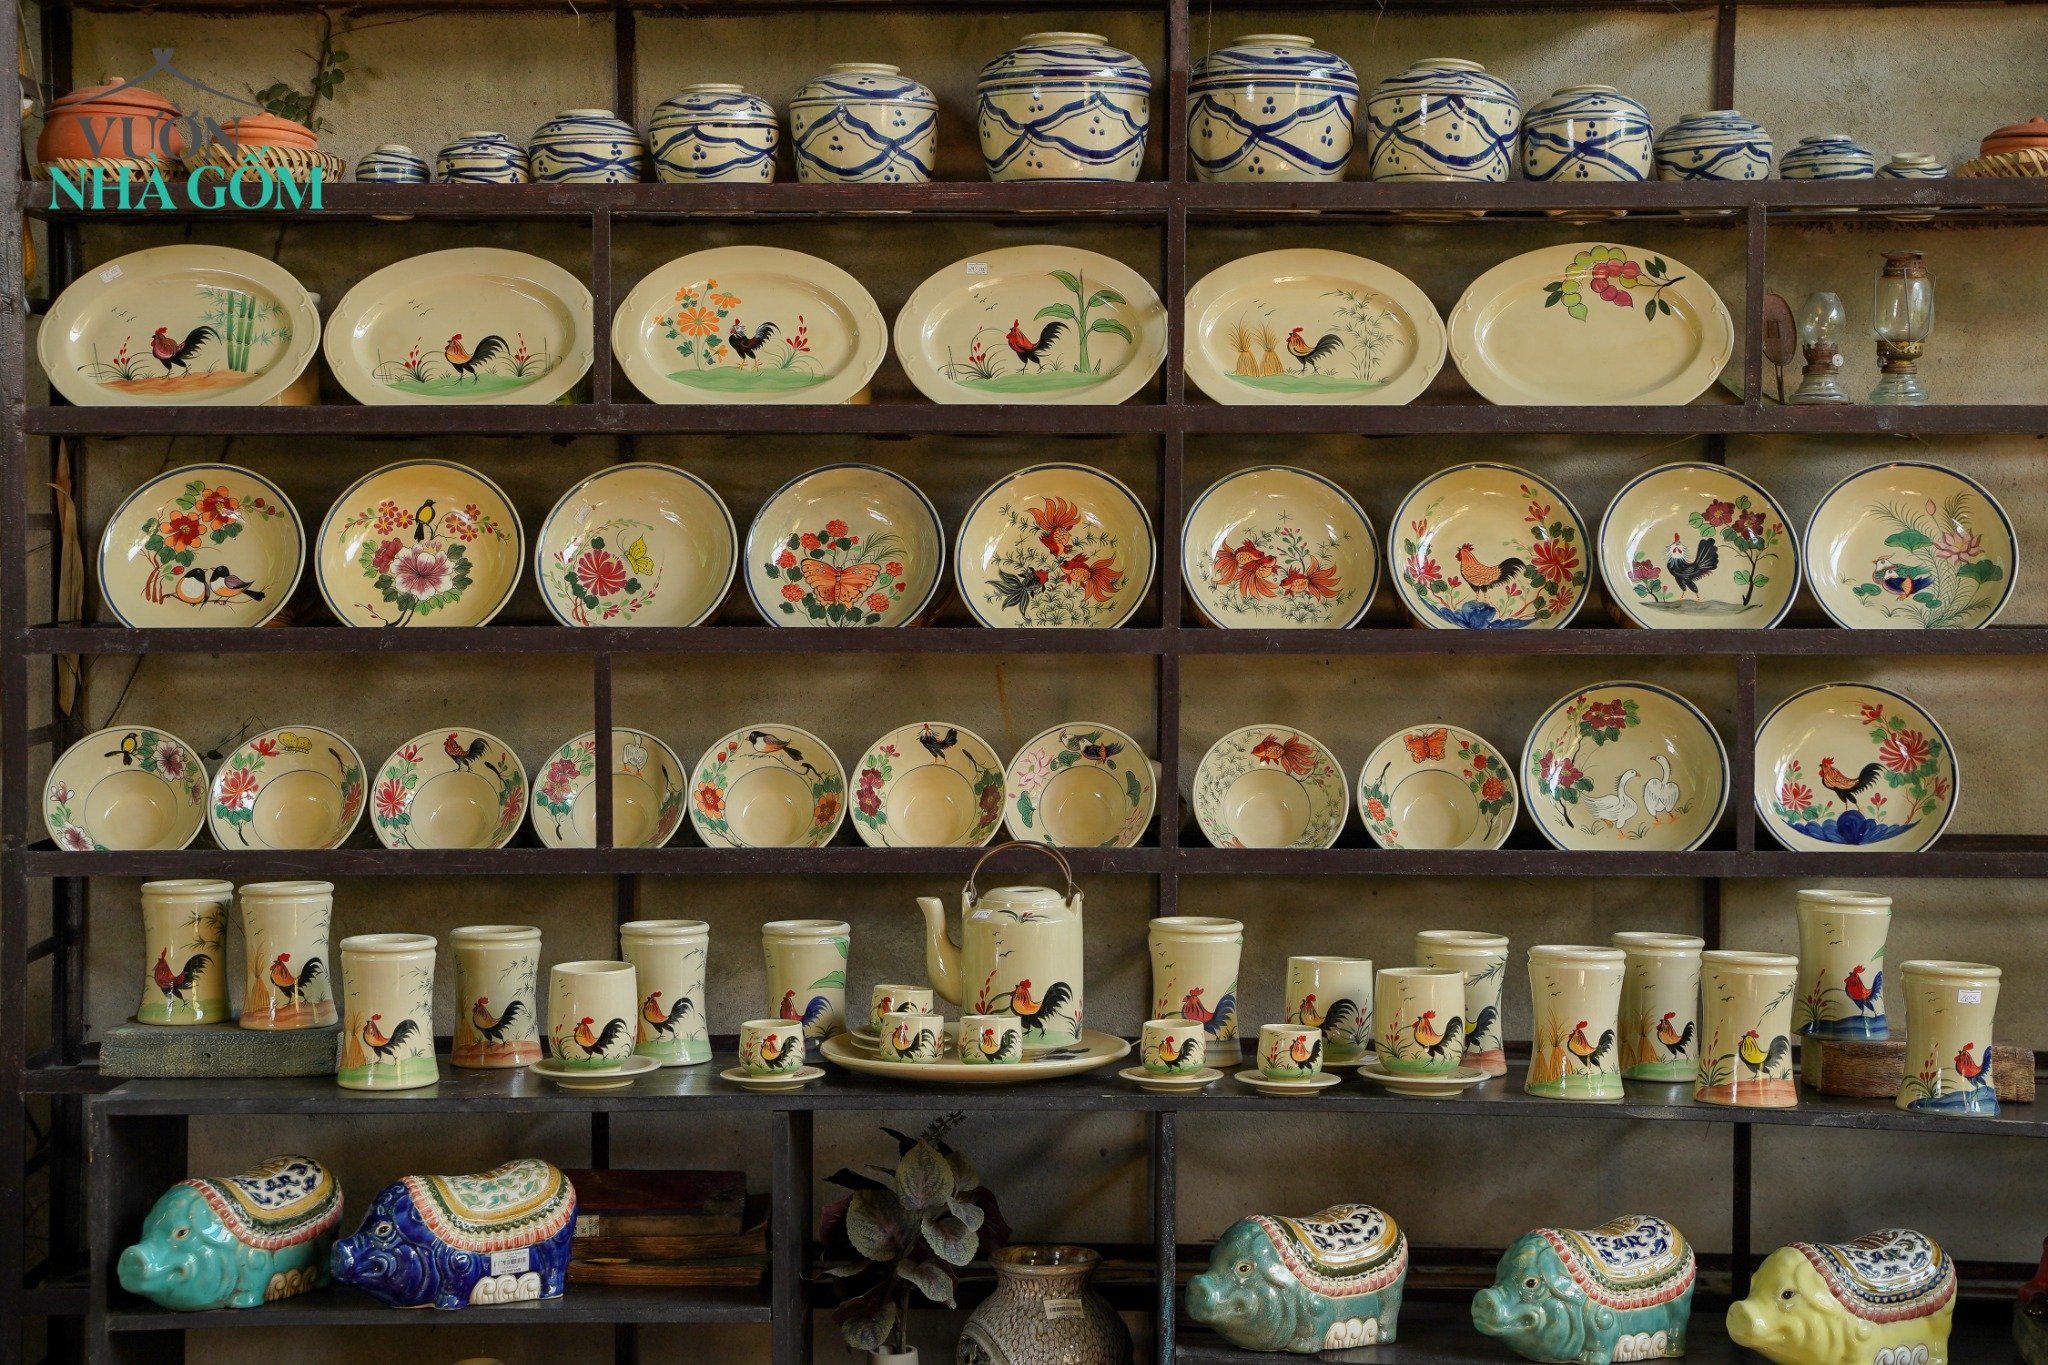  Bộ sưu tập chén dĩa gốm Lái Thiêu được thực hiện bởi Cô Yến, gốm Thủ Biên 